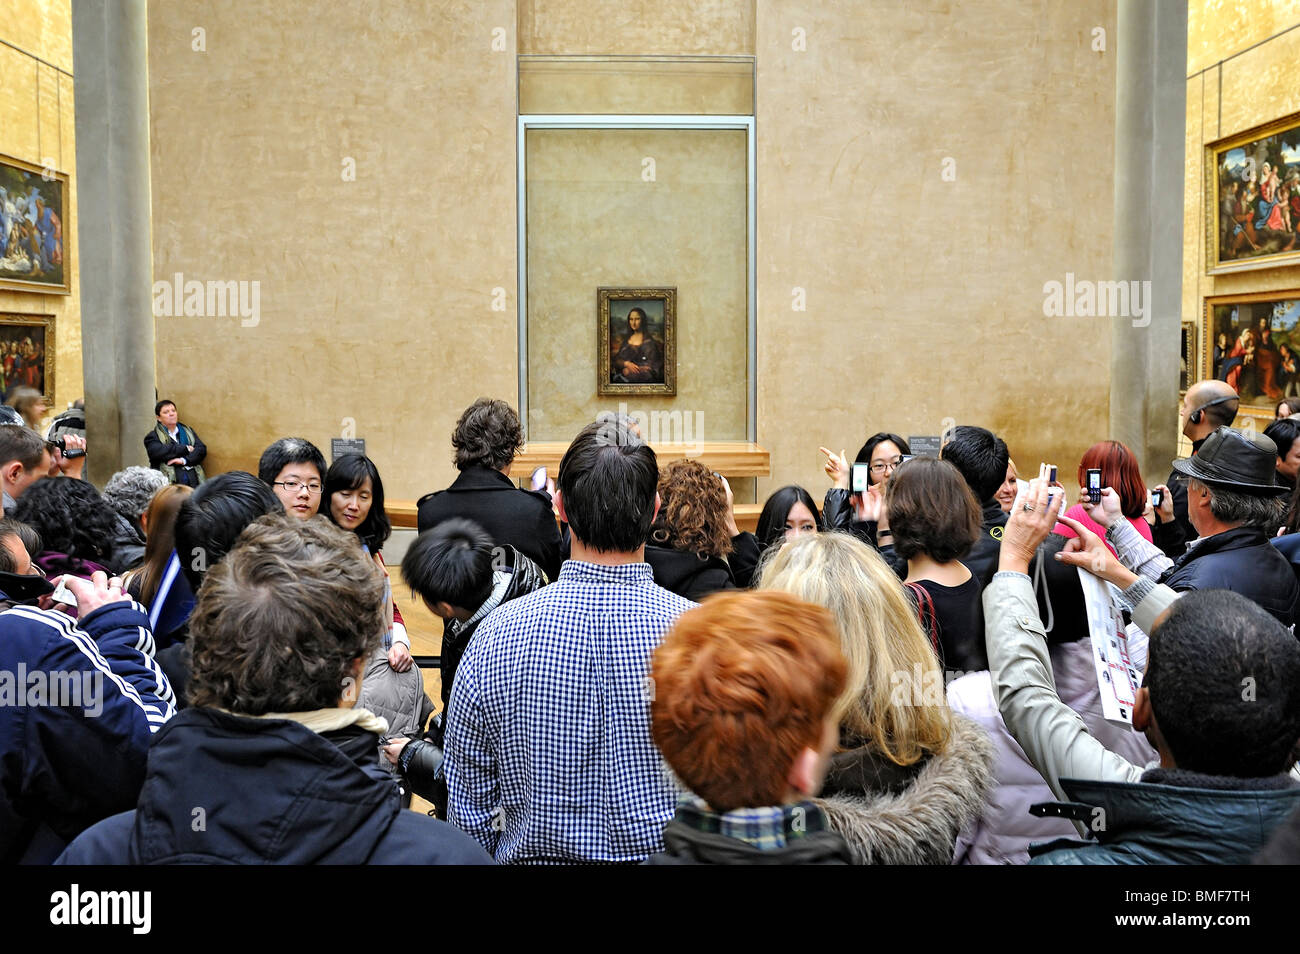 Louvre museum, Paris, France. Stock Photo